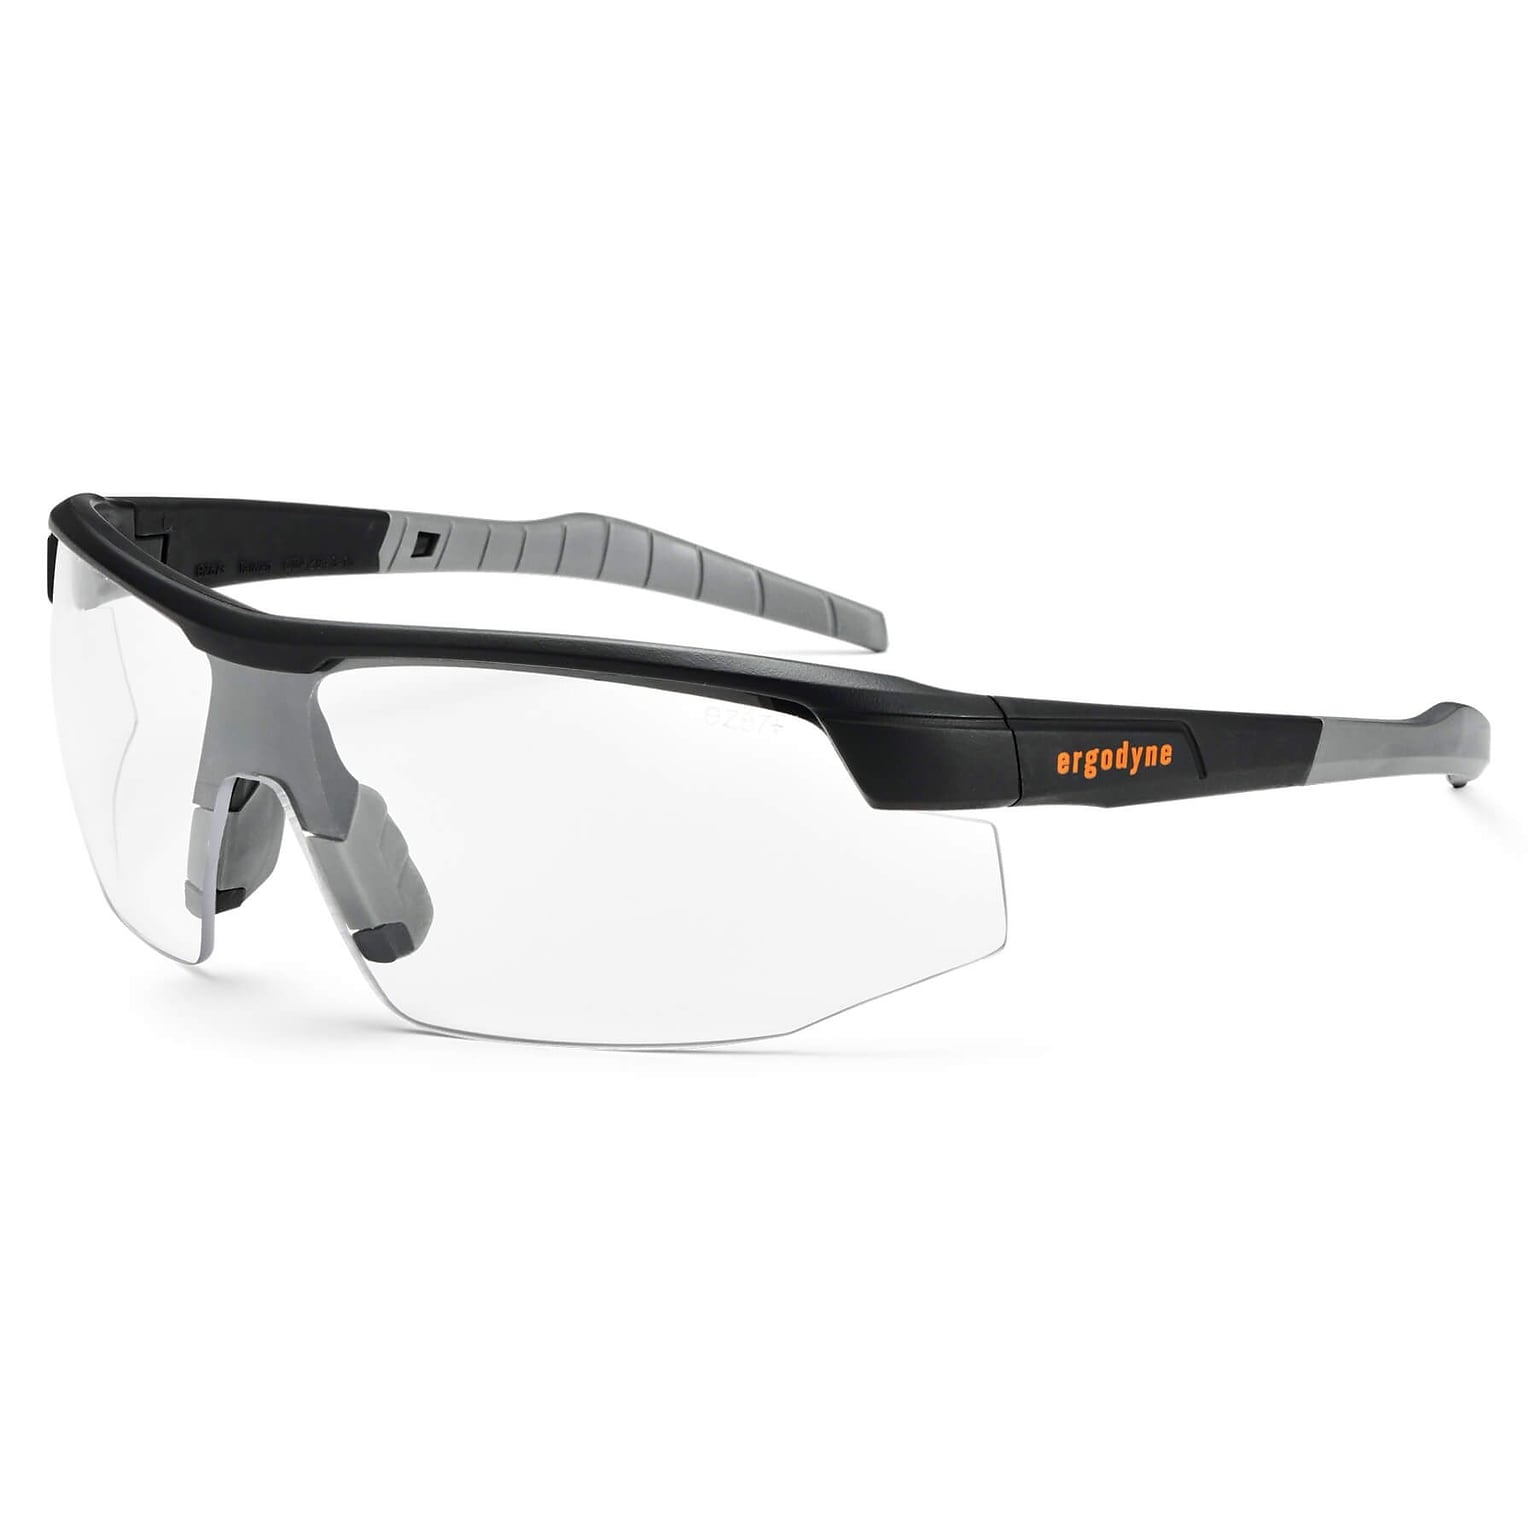 Skullerz® Skoll Safety Glasses, Anti-Fog Clear Lens, Black (59003)